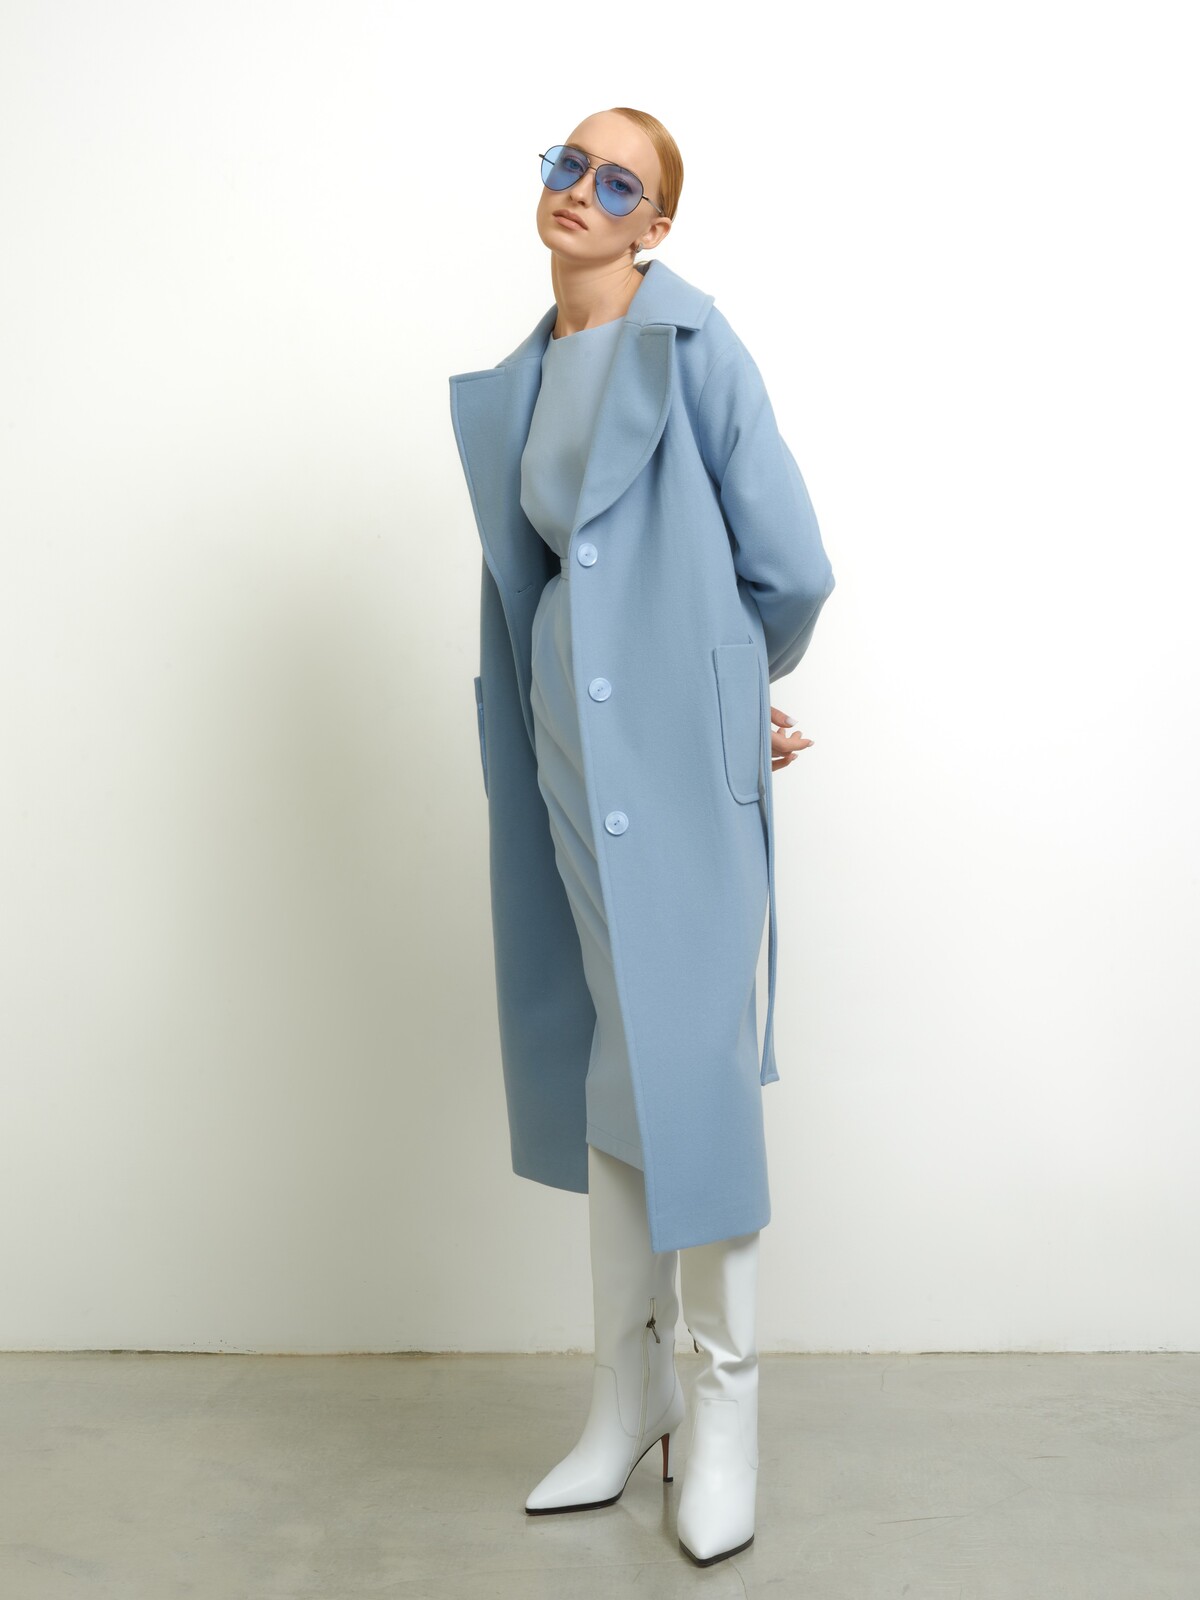 Голубое пальто-халат